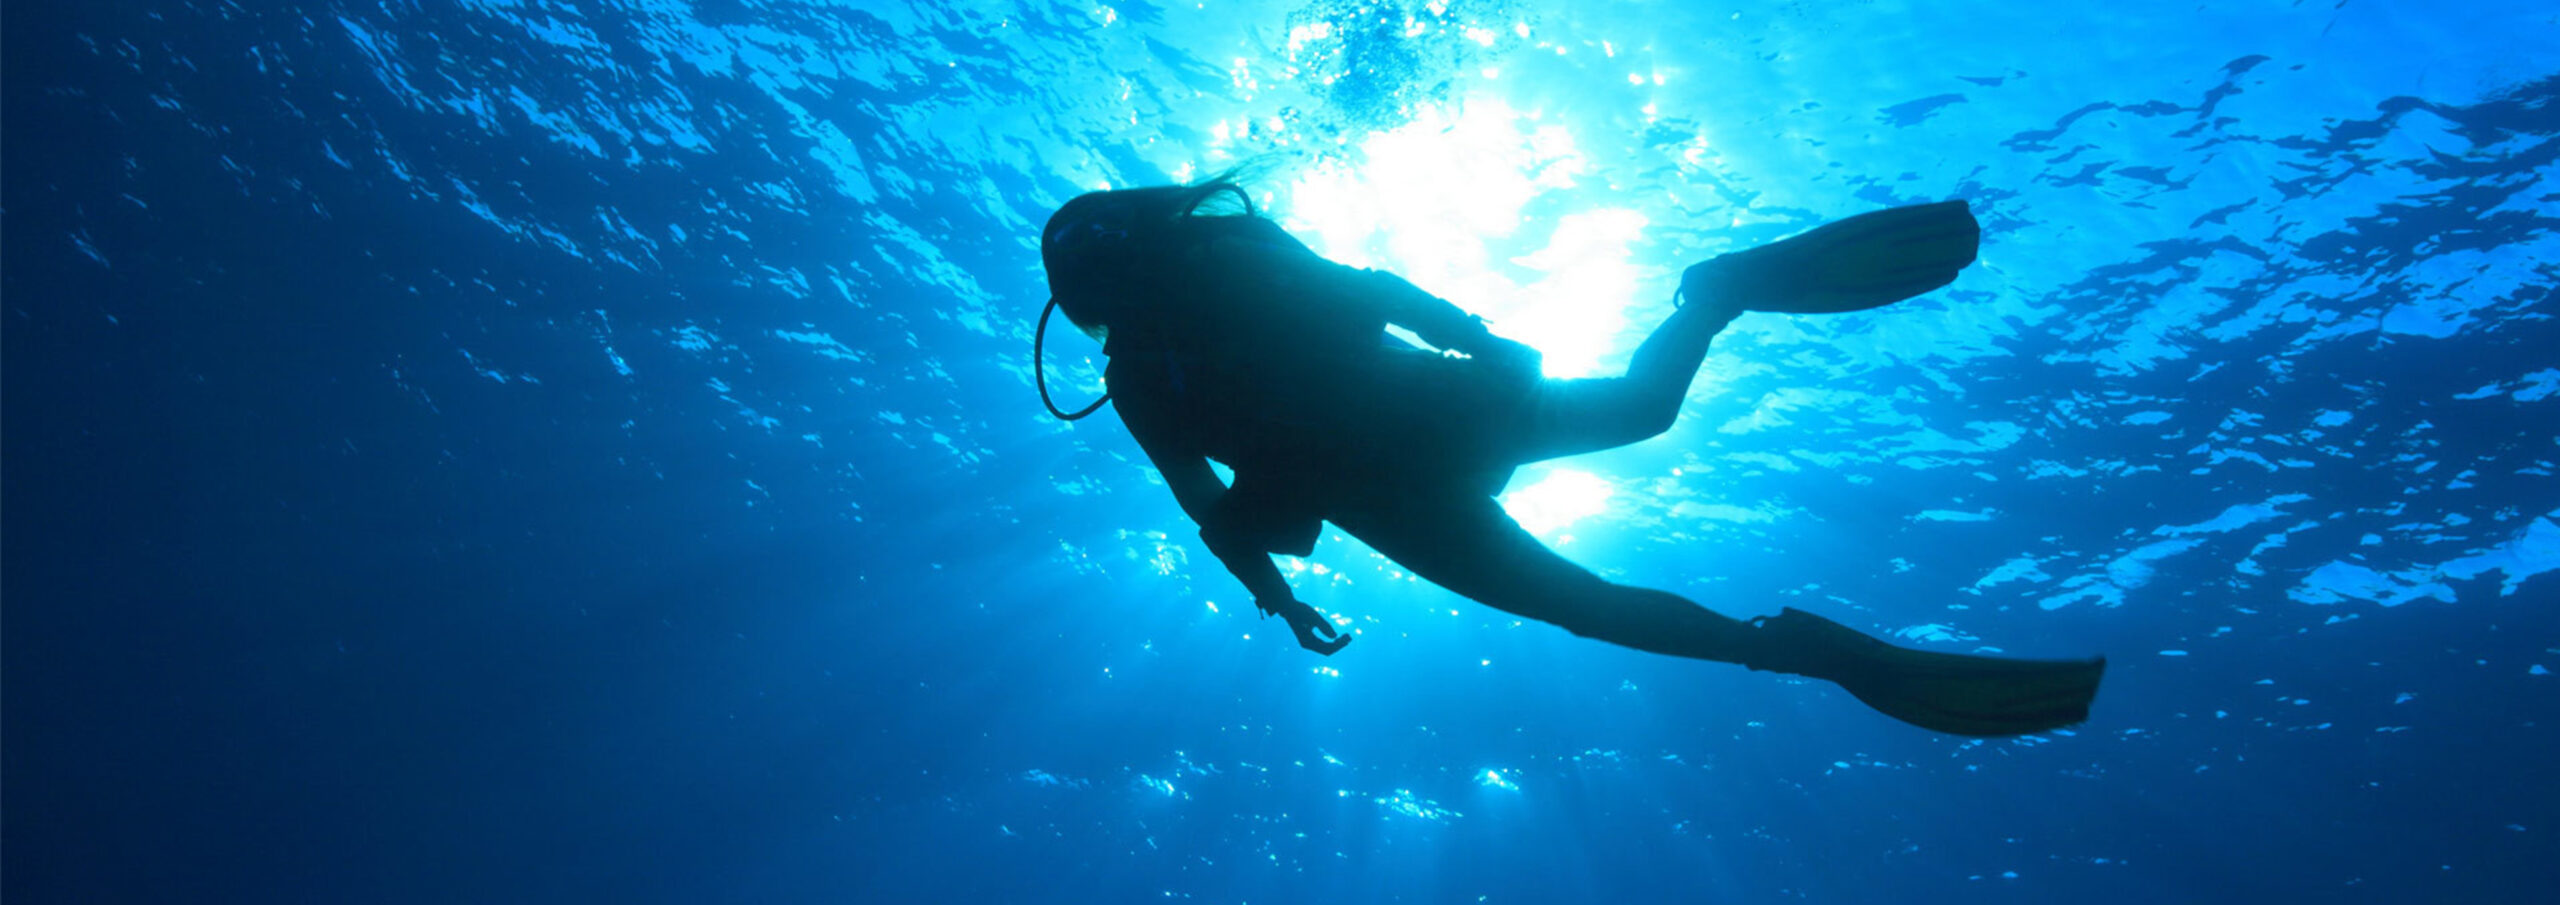 Dive Sites - Key Largo's Premier Scuba Charter